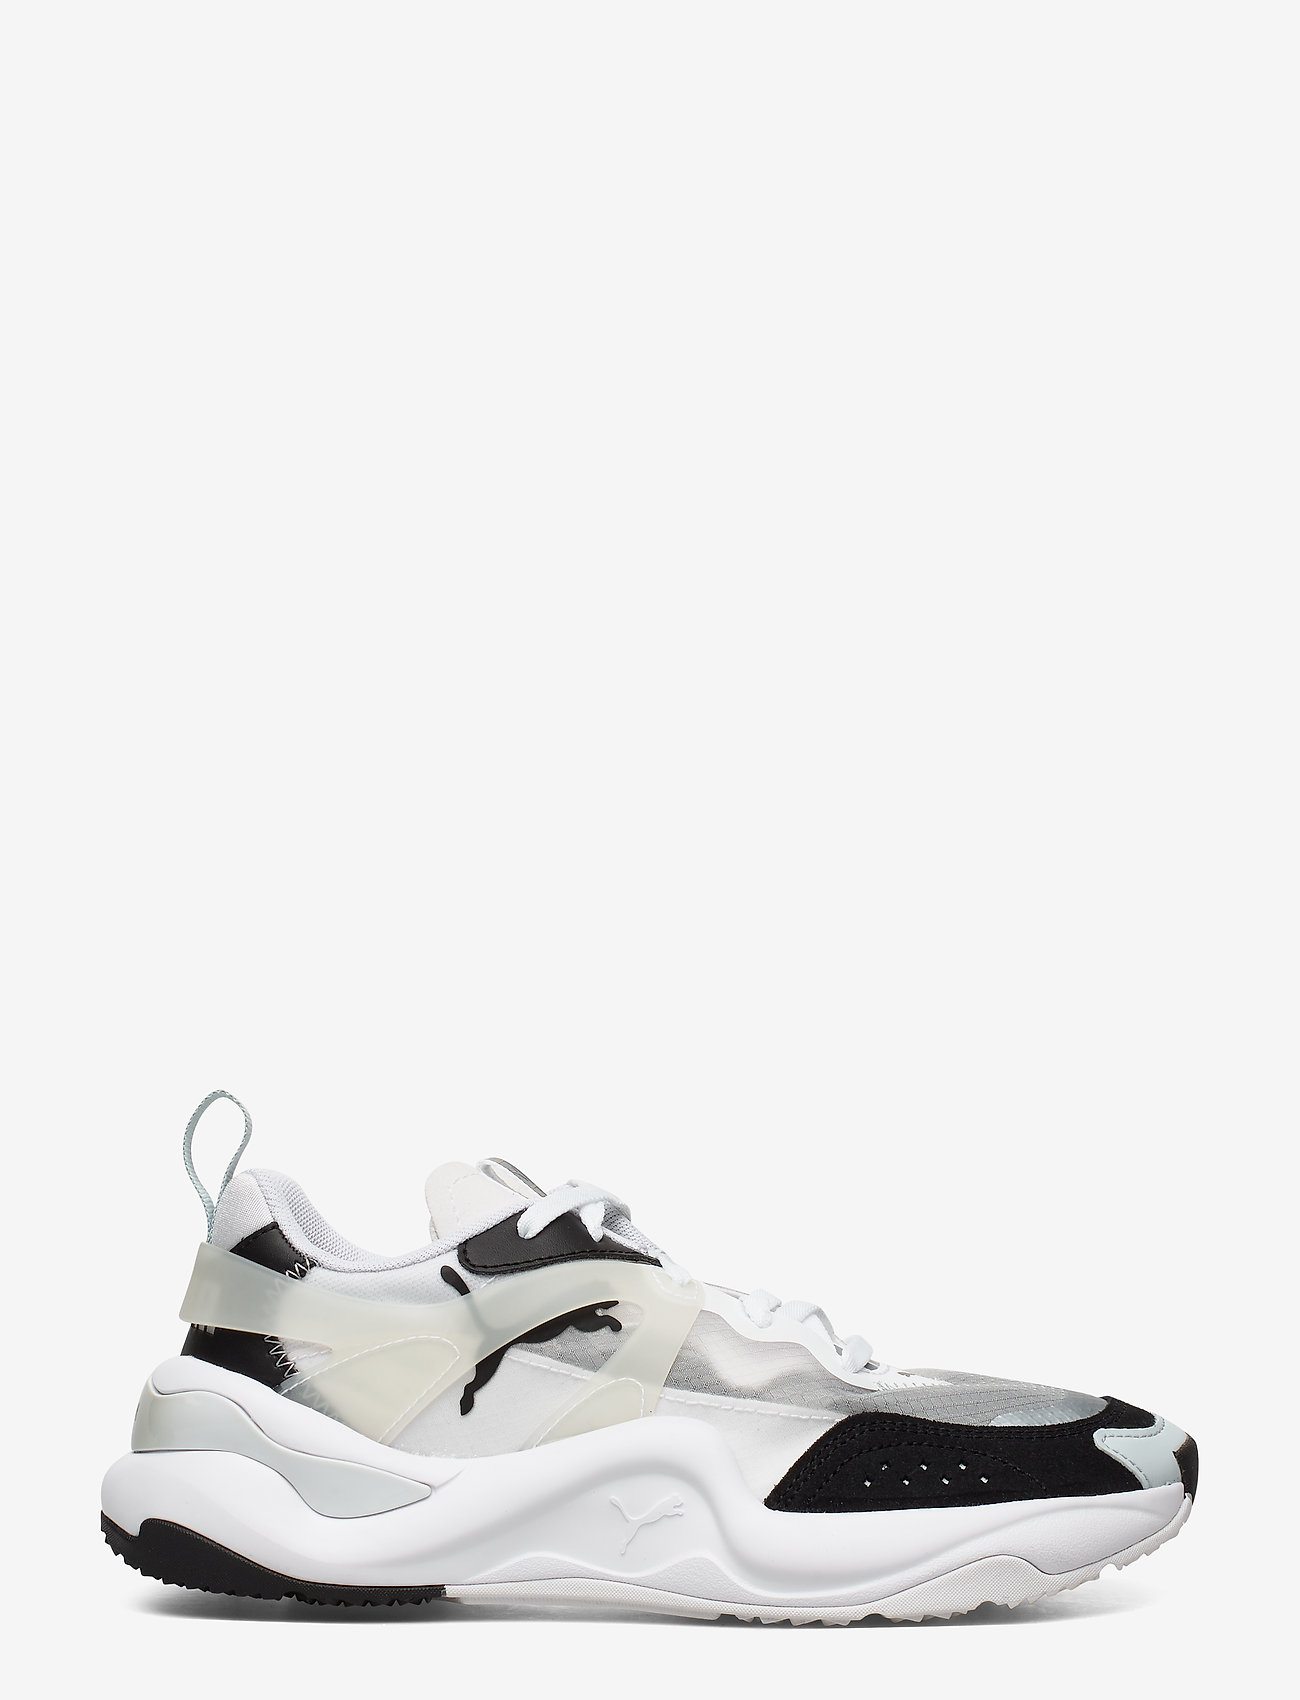 puma white high top sneakers